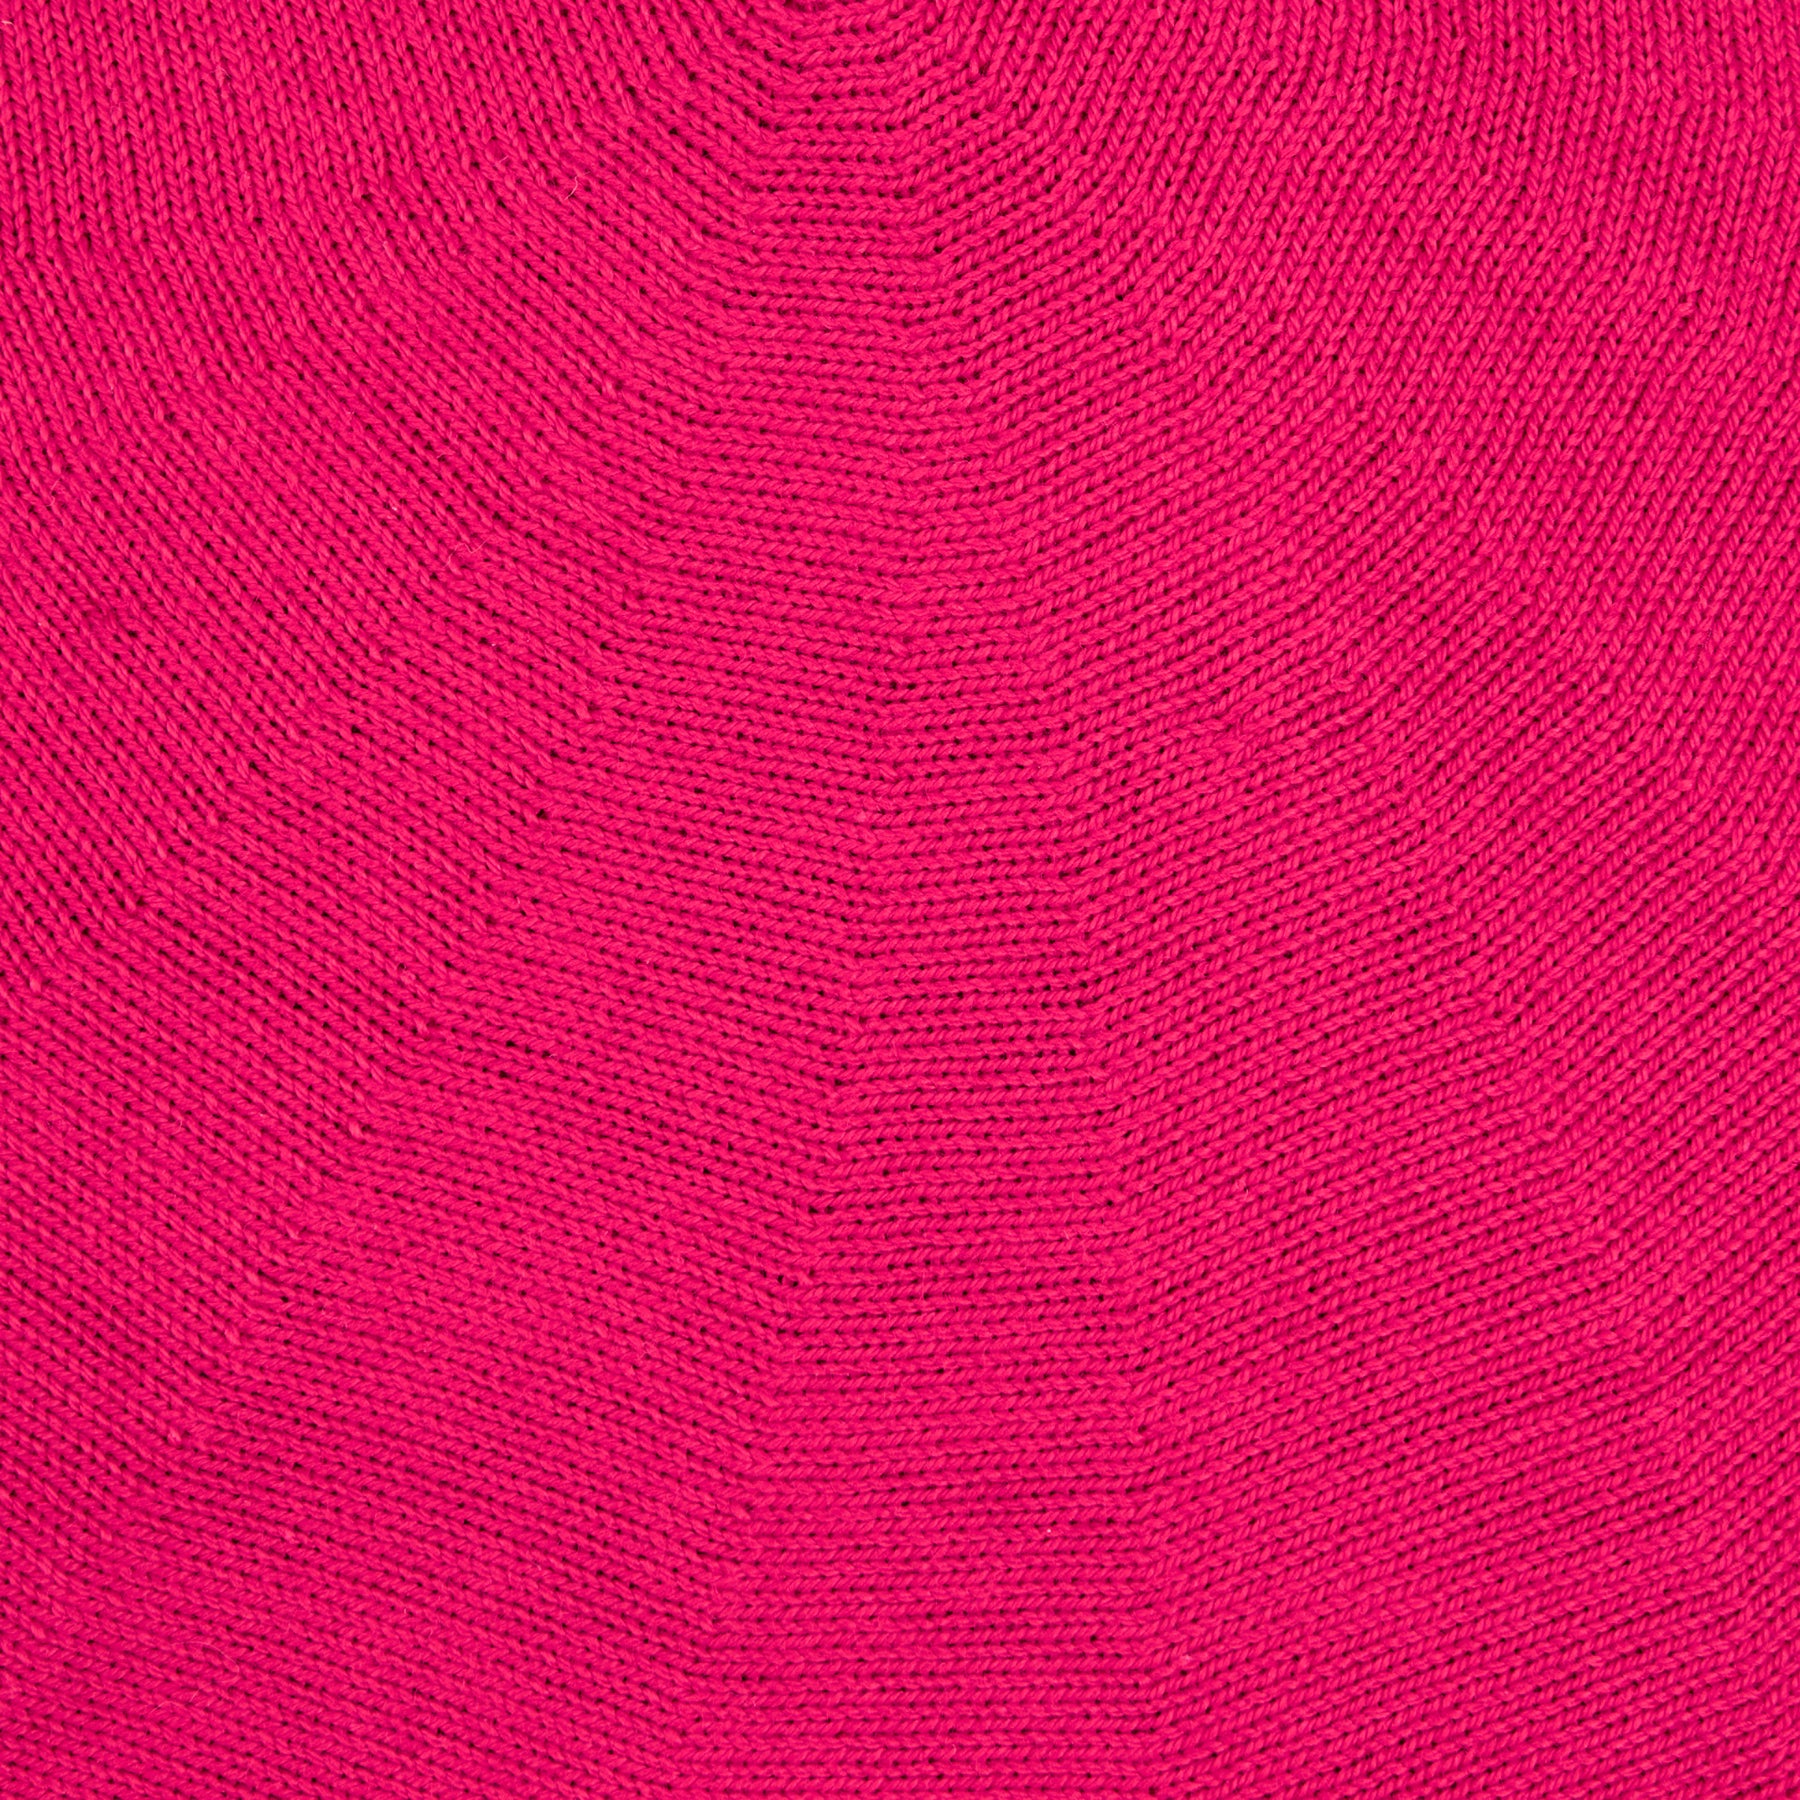 Laulhère Authentique Cotton Beret Pink